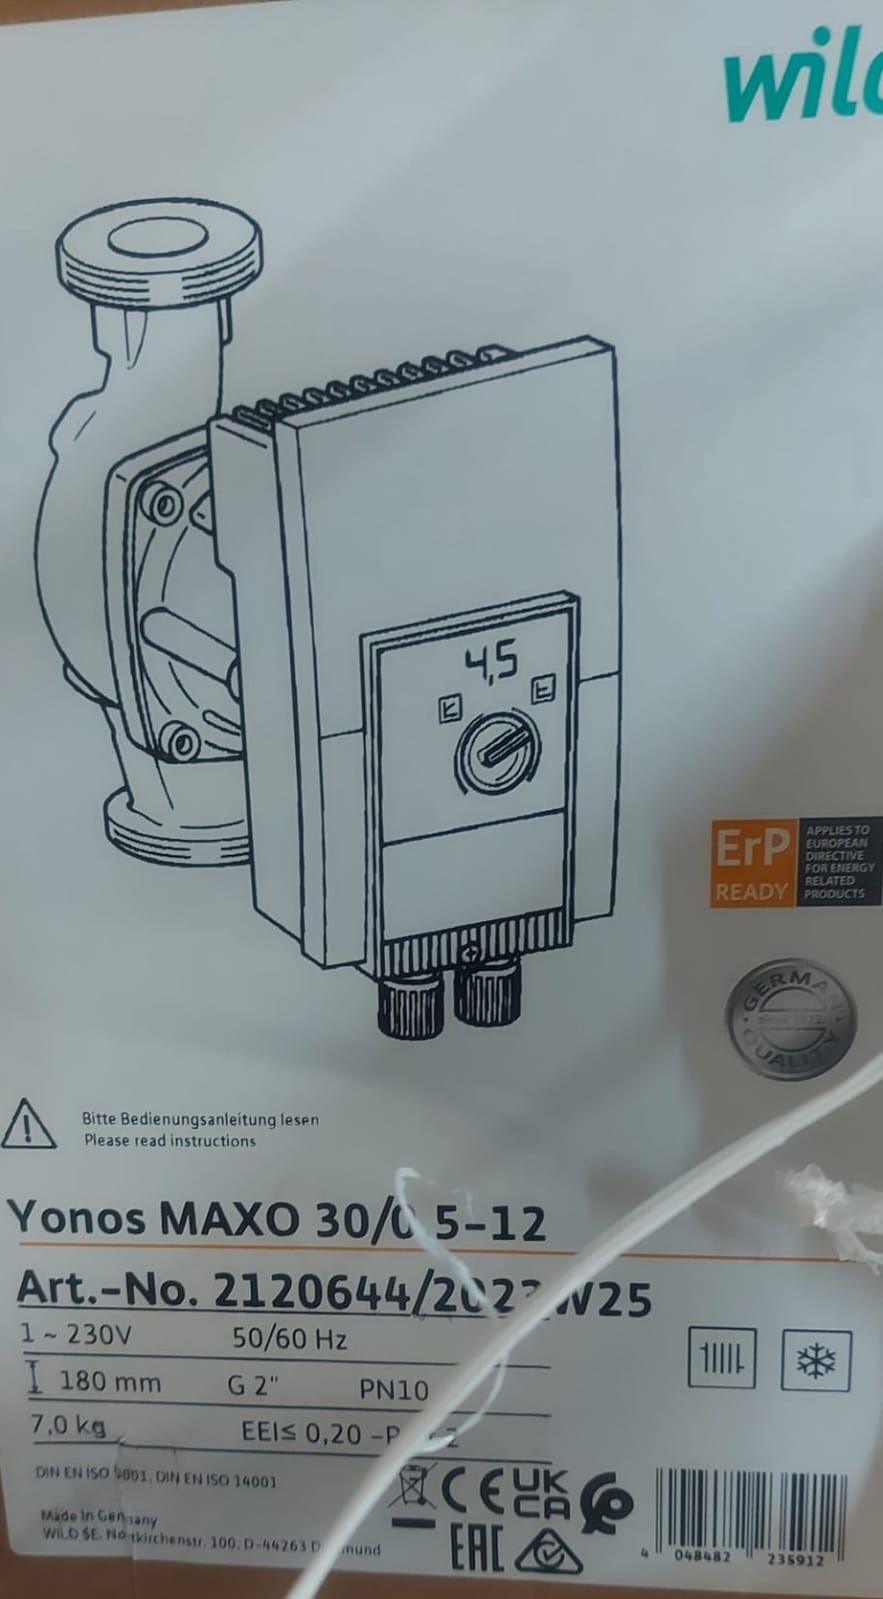 Pompa WILO grundfos Yonos MAXO 30/0.5-12 nowa gwar. do czerwca 2025